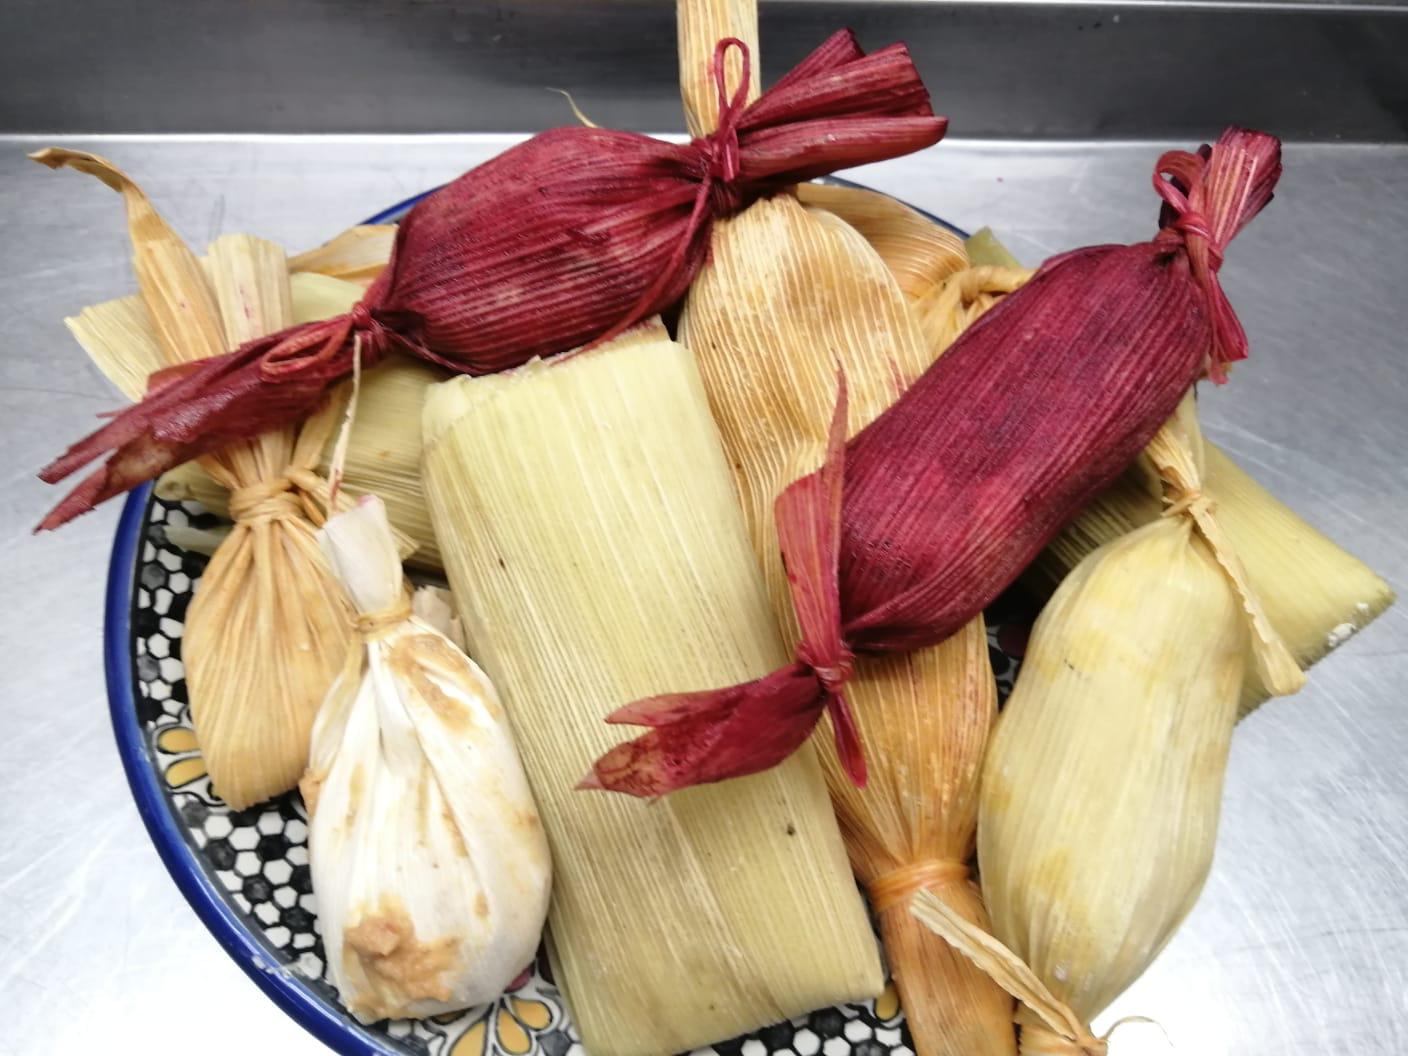 Tamales colorados, una delicia culinaria del sur de Sinaloa